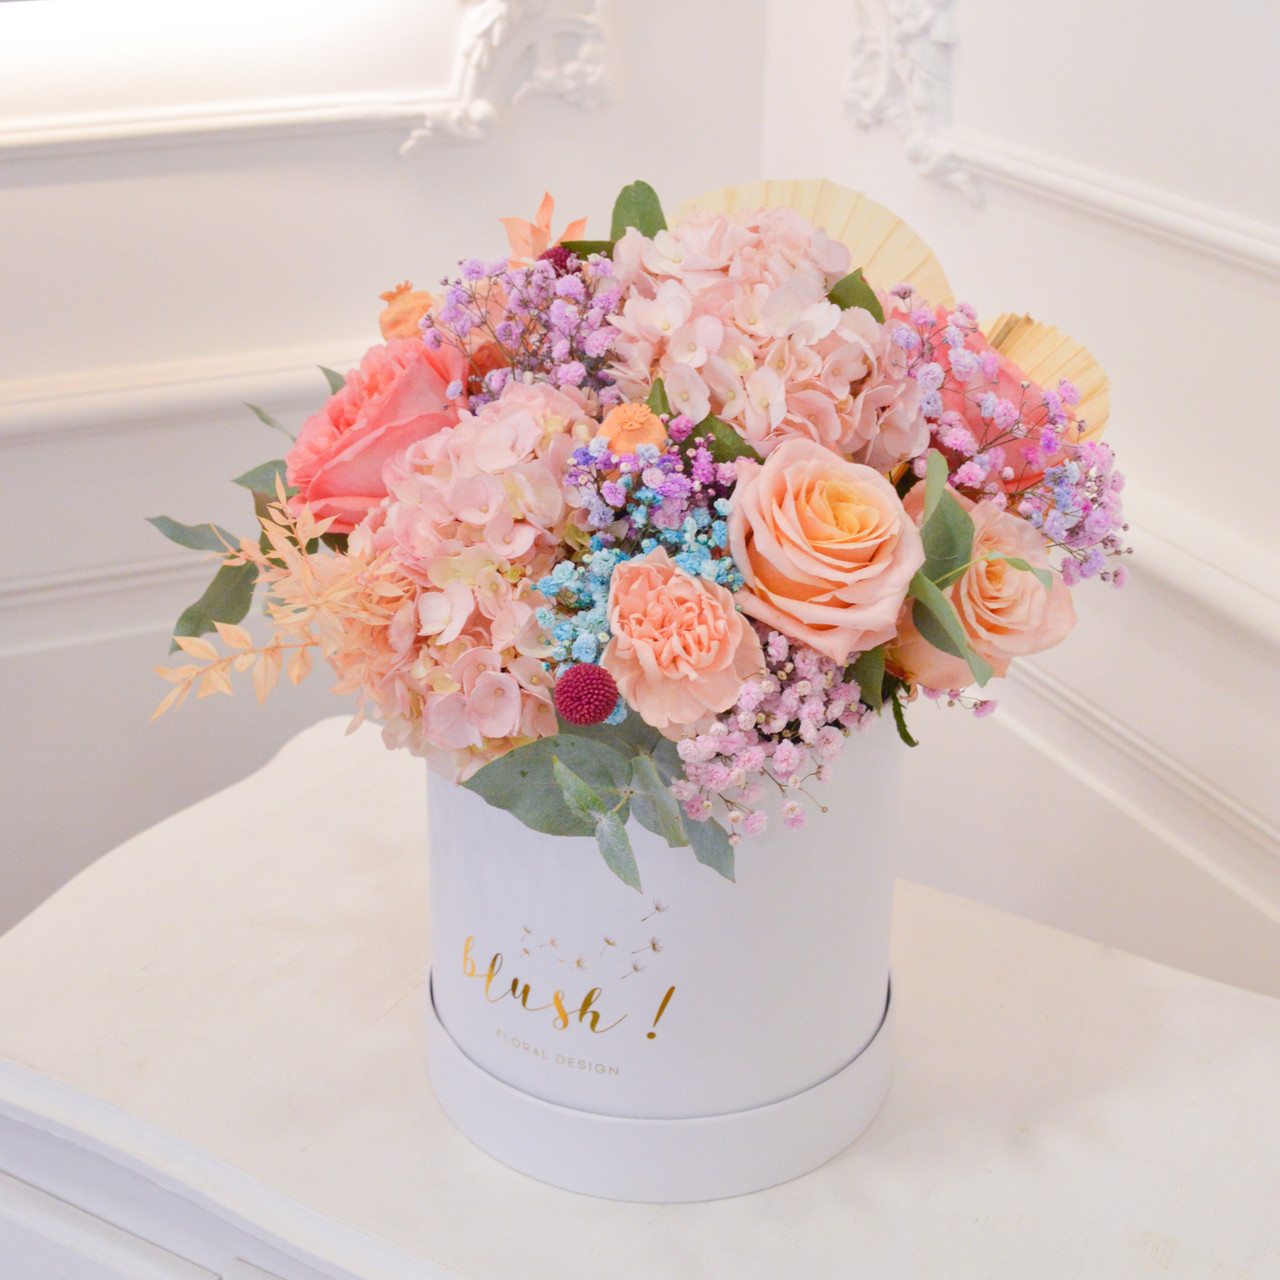 Blush! Livraison de boîte de fleurs fraîches premium - Floralbox